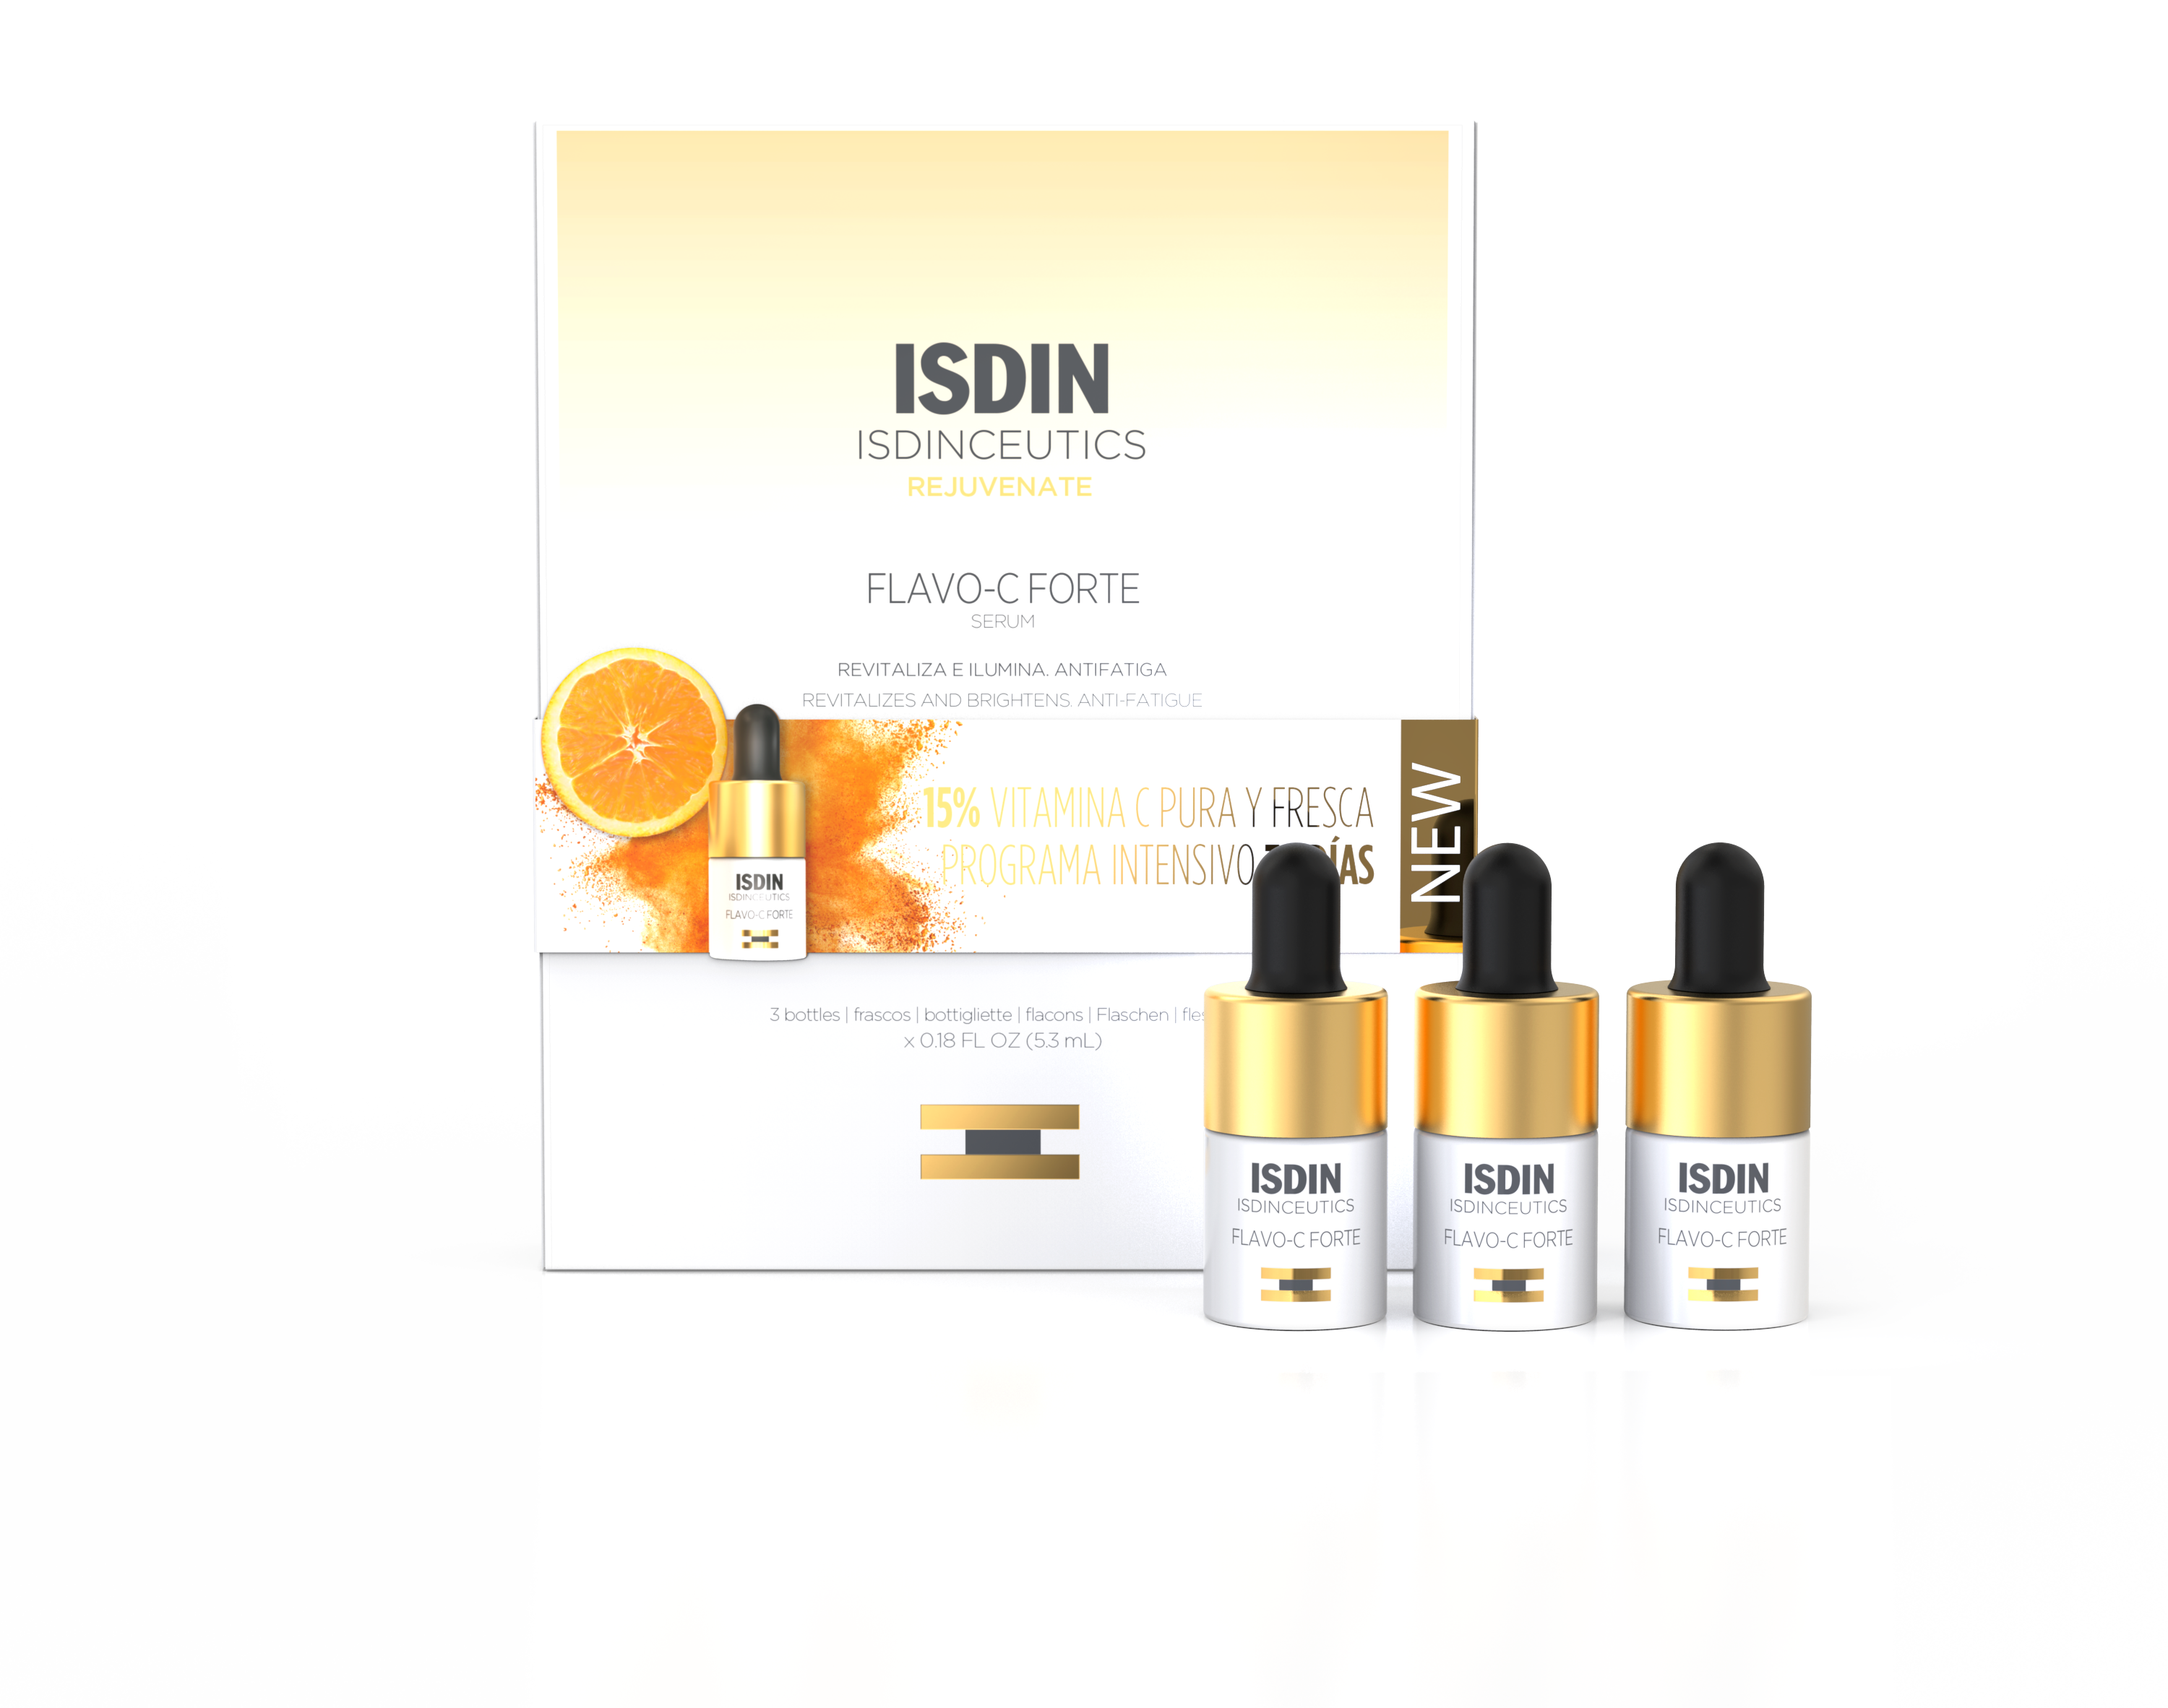 ISDIN Isdinceutics Flavo Cforte 3UX5, 3ML 15,9ML- Sérum antioxidante com 15% de vitamina c pura 